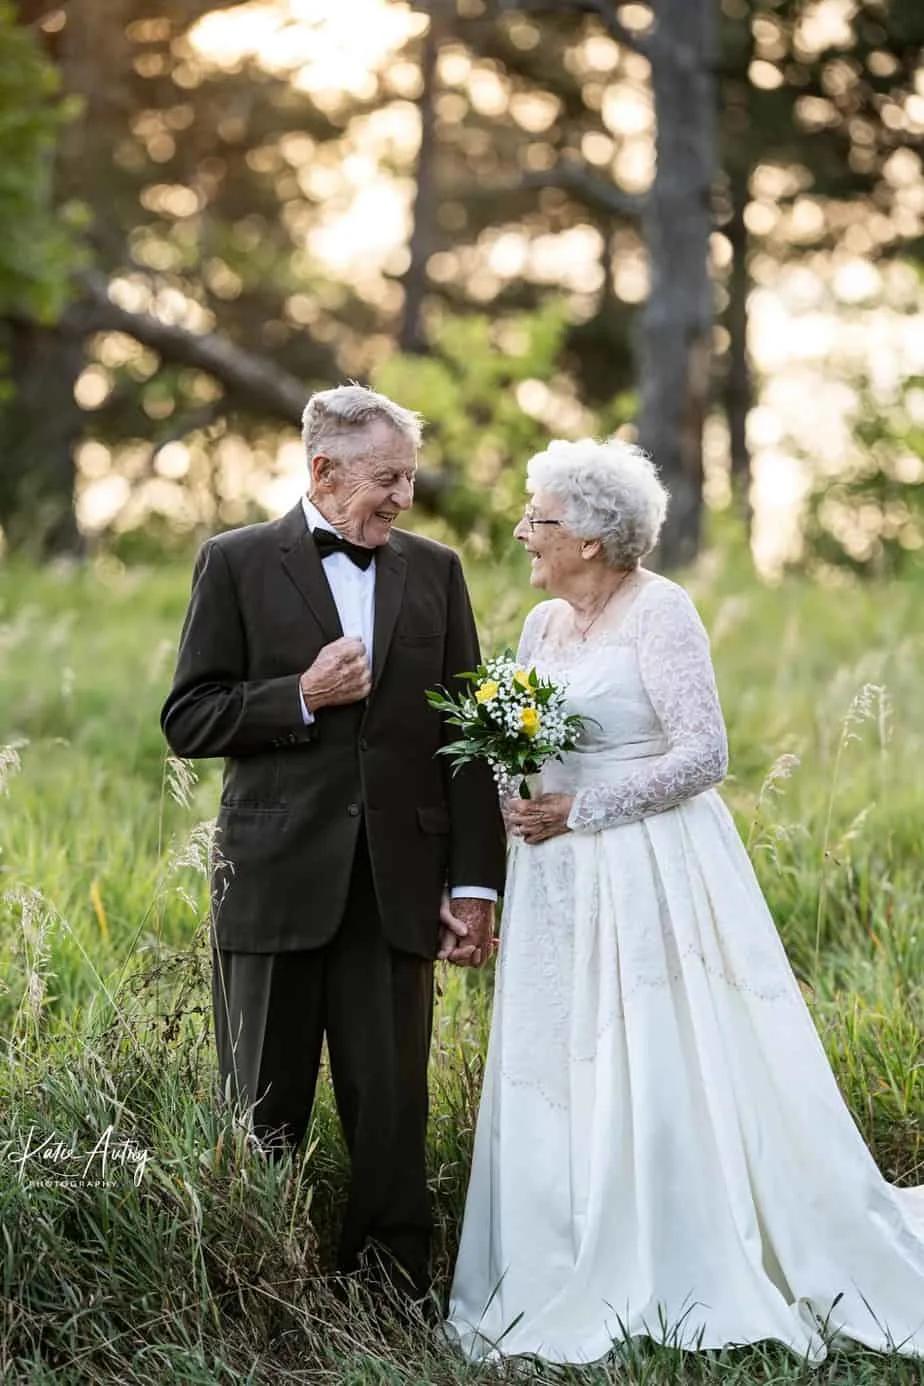 Бриллиантовая свадьба: супруги надели в памятную дату наряды 60-летней давности